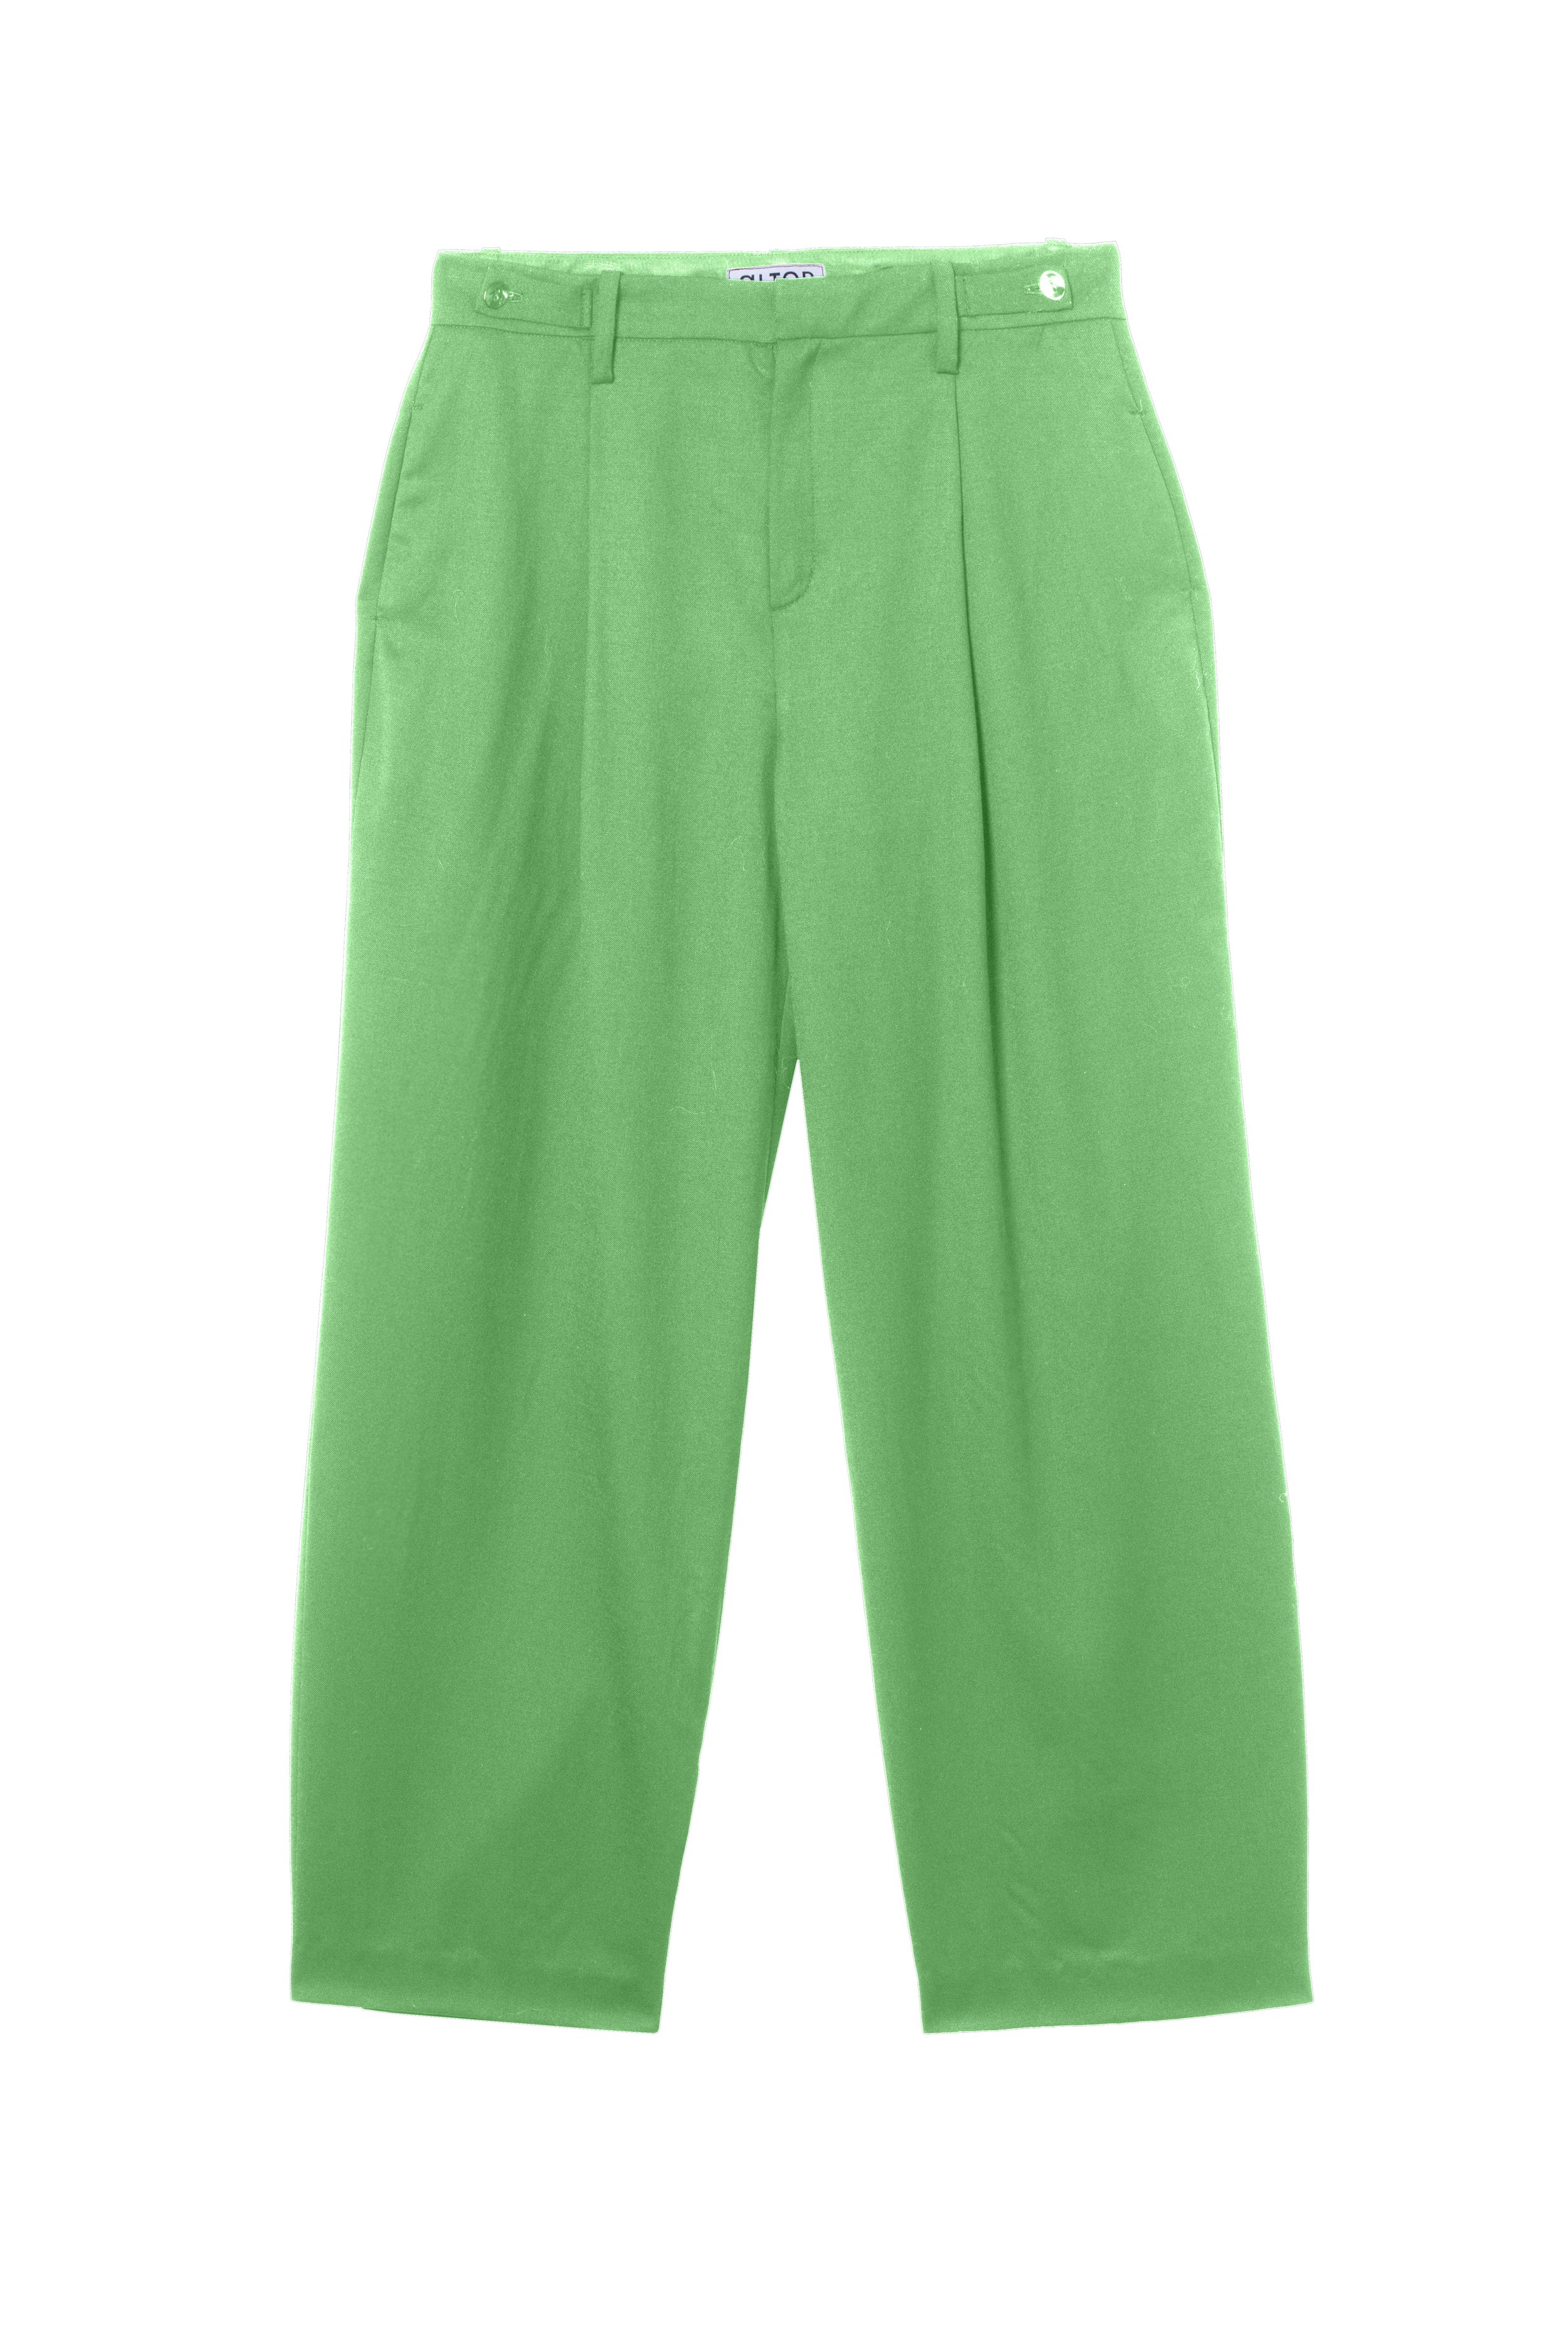 Alter Designs The George Pants in Green Wool.jpg